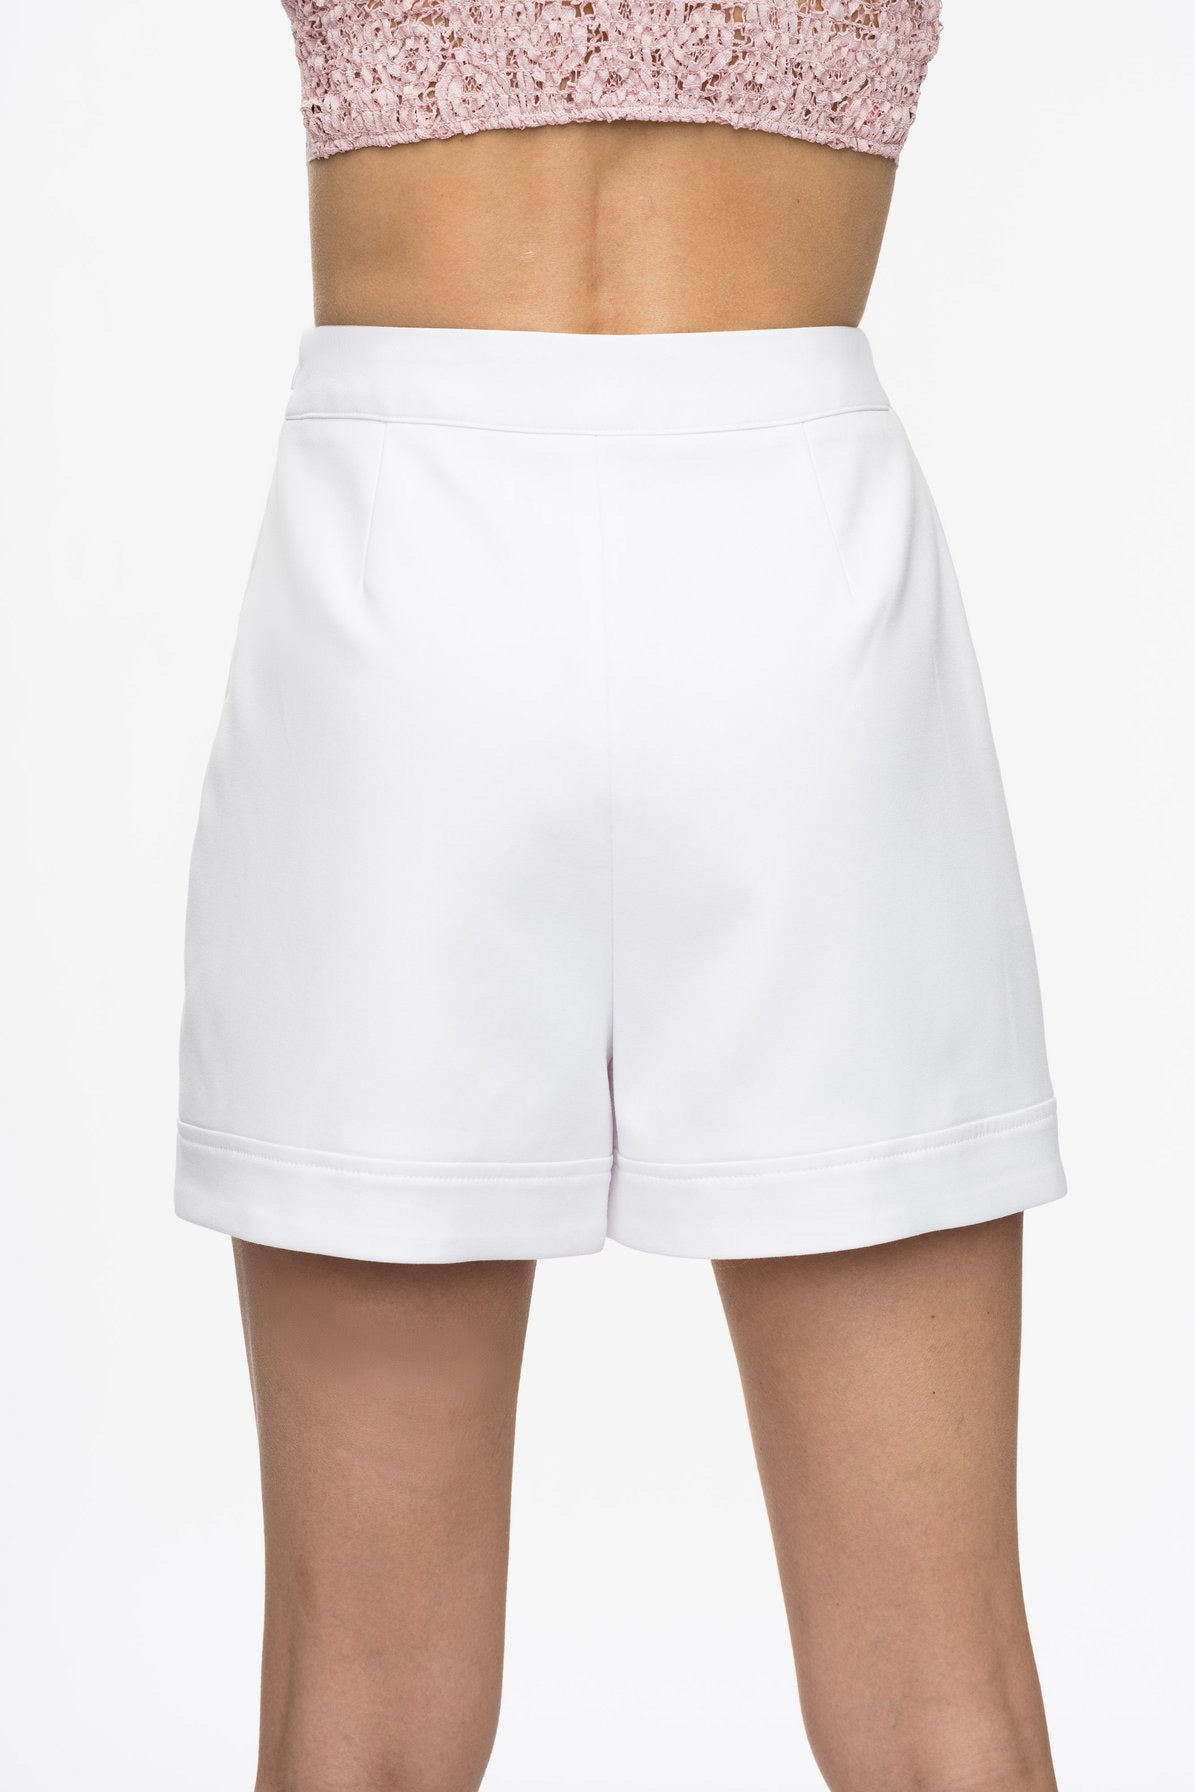 Plaid Windowpane Dress Shorts  Clothing Boutique – Jolie Vaughan Mature  Women's Online Clothing Boutique